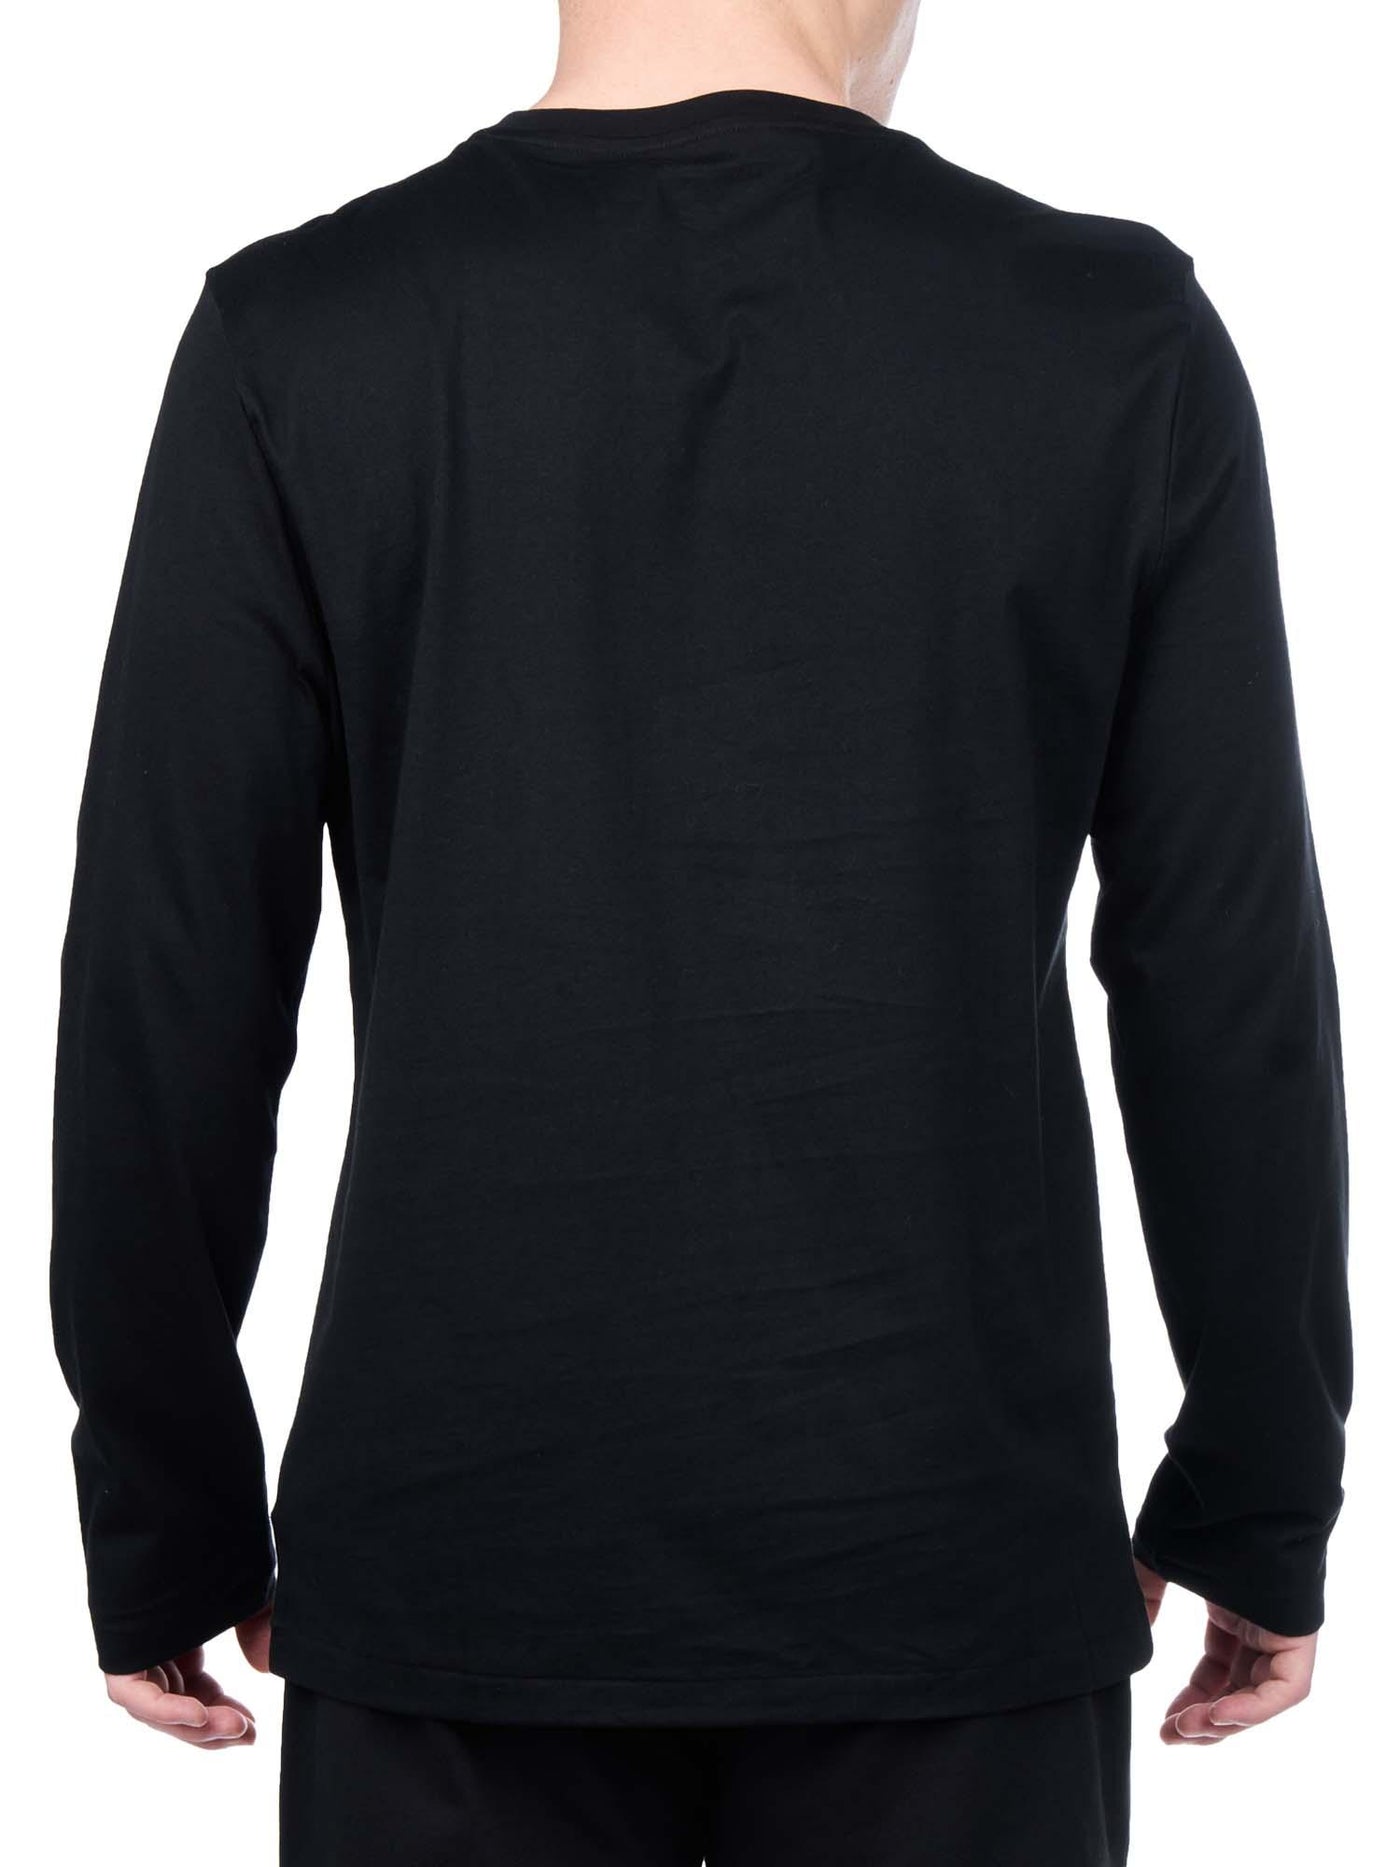 Ralph Lauren Cotton T-shirt | Black